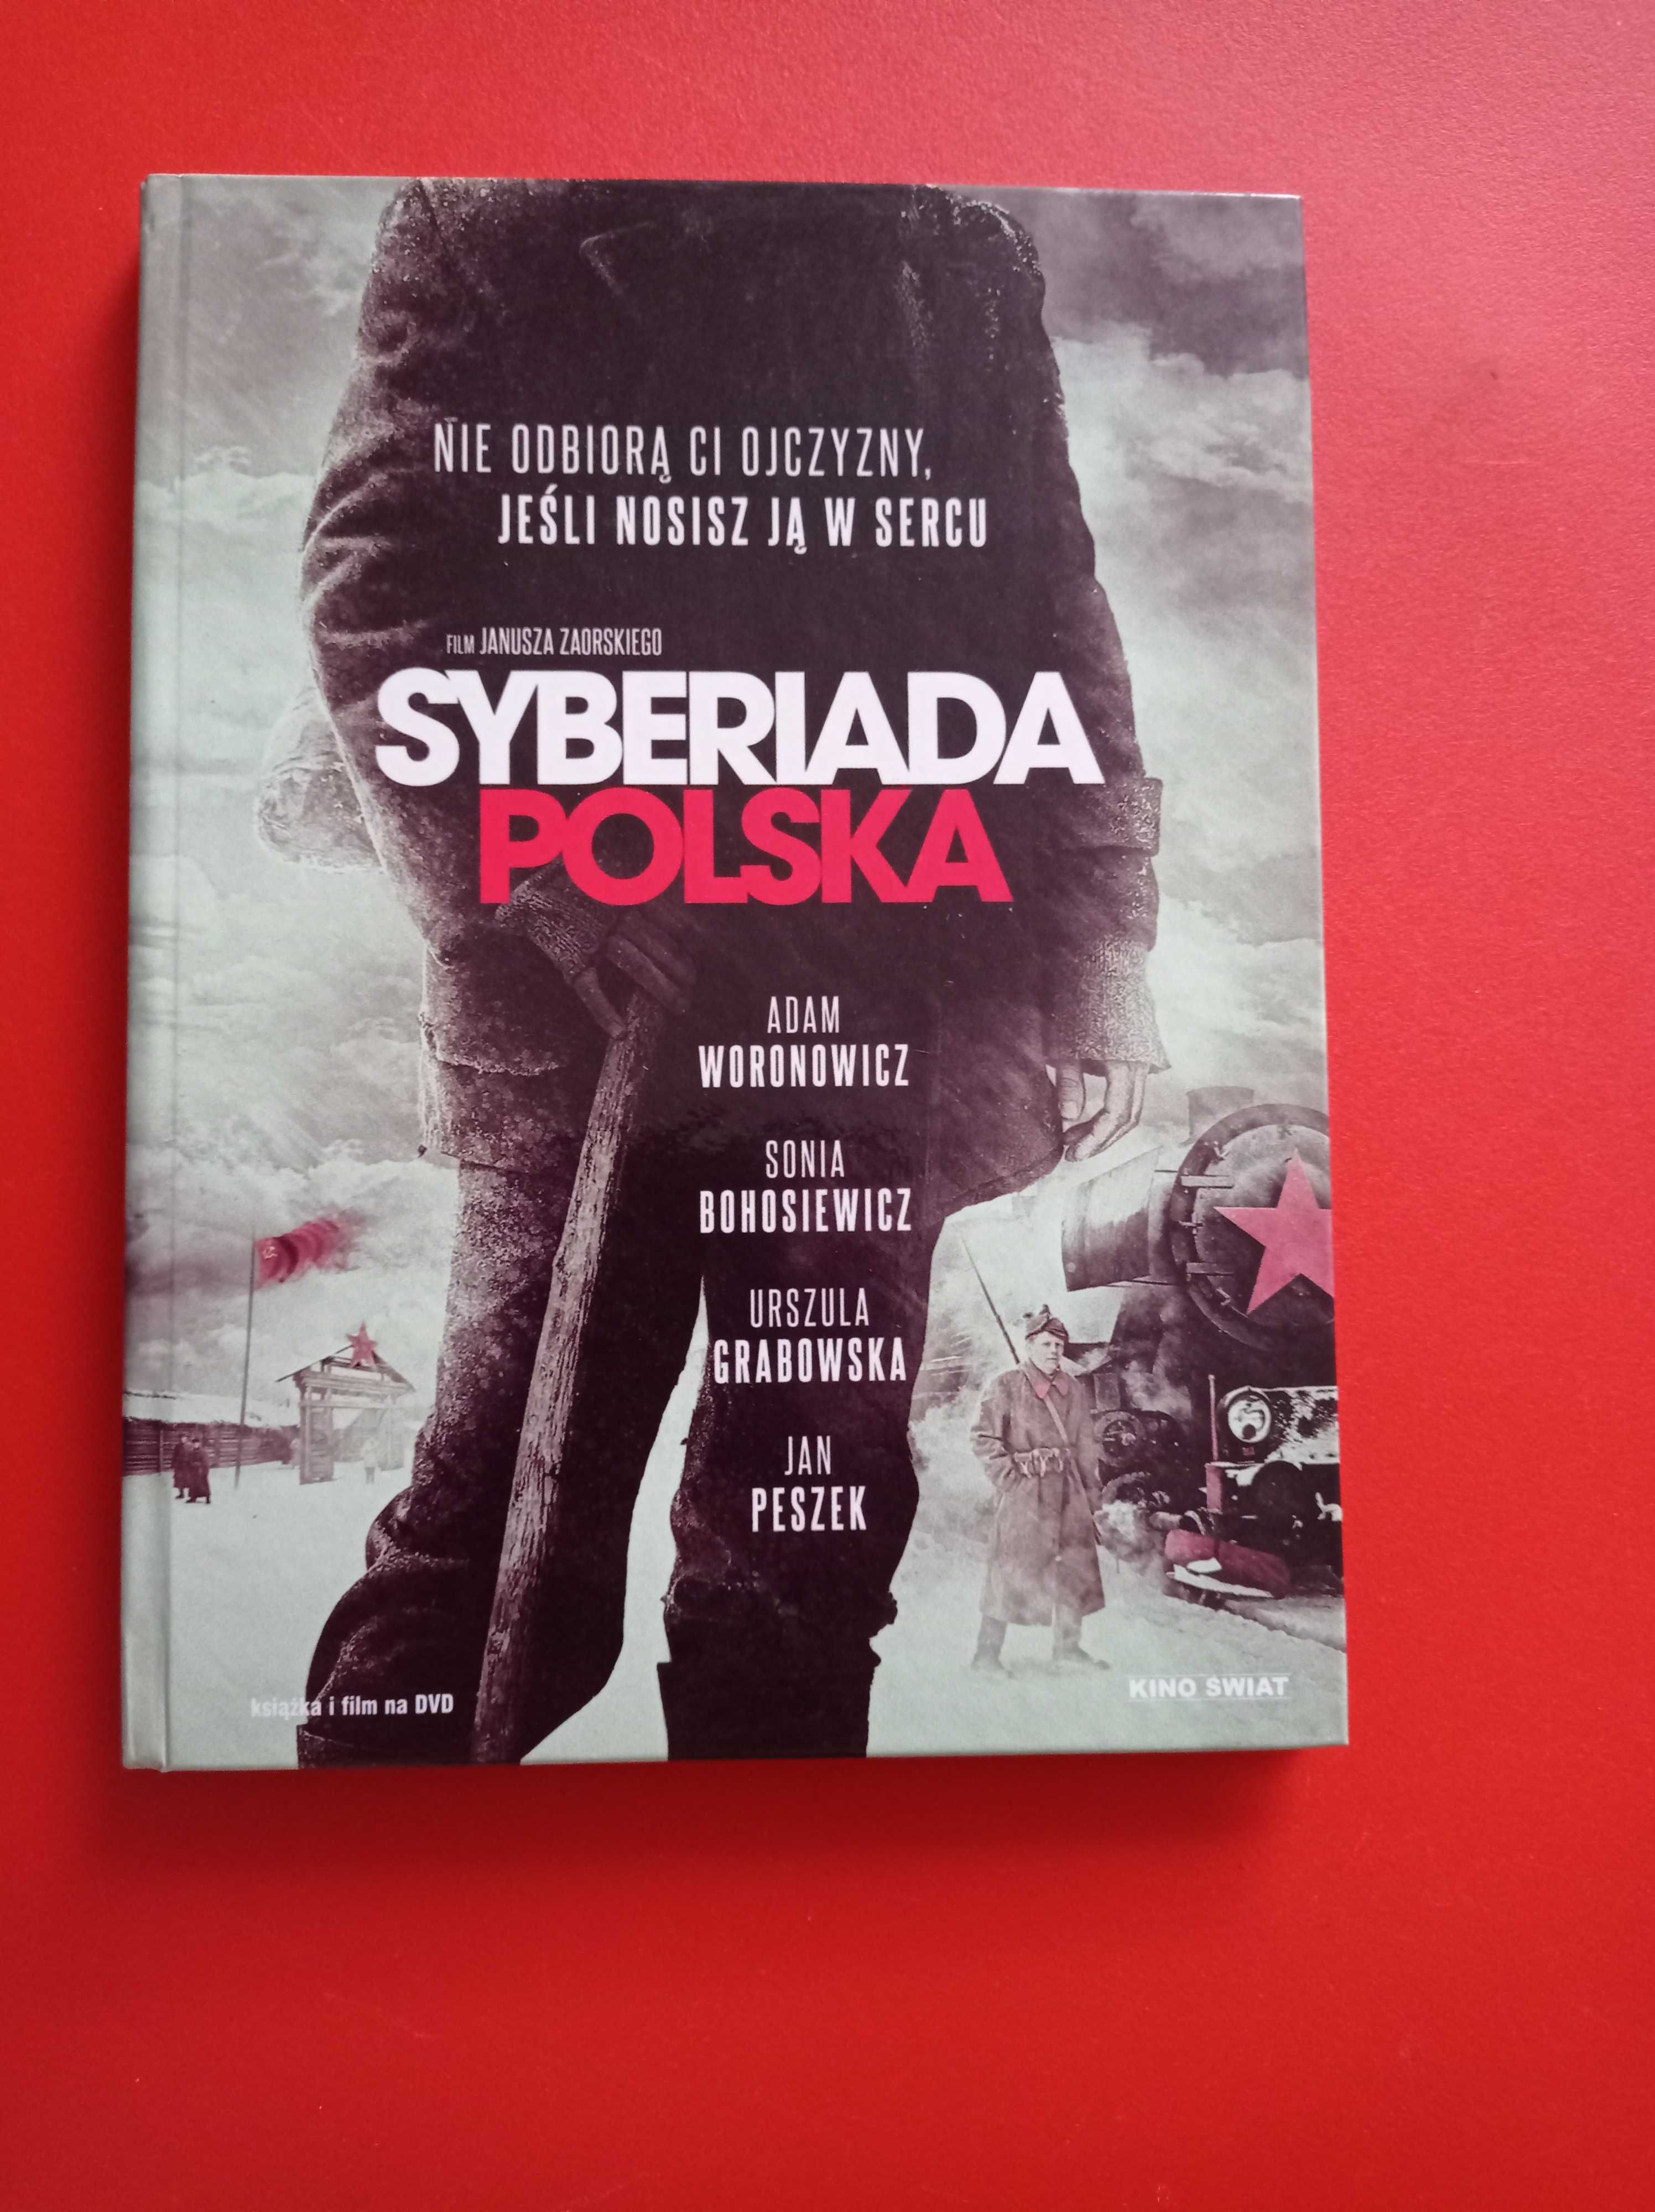 Idol Drużyna (o siatkówce) Syberiada polska DVD